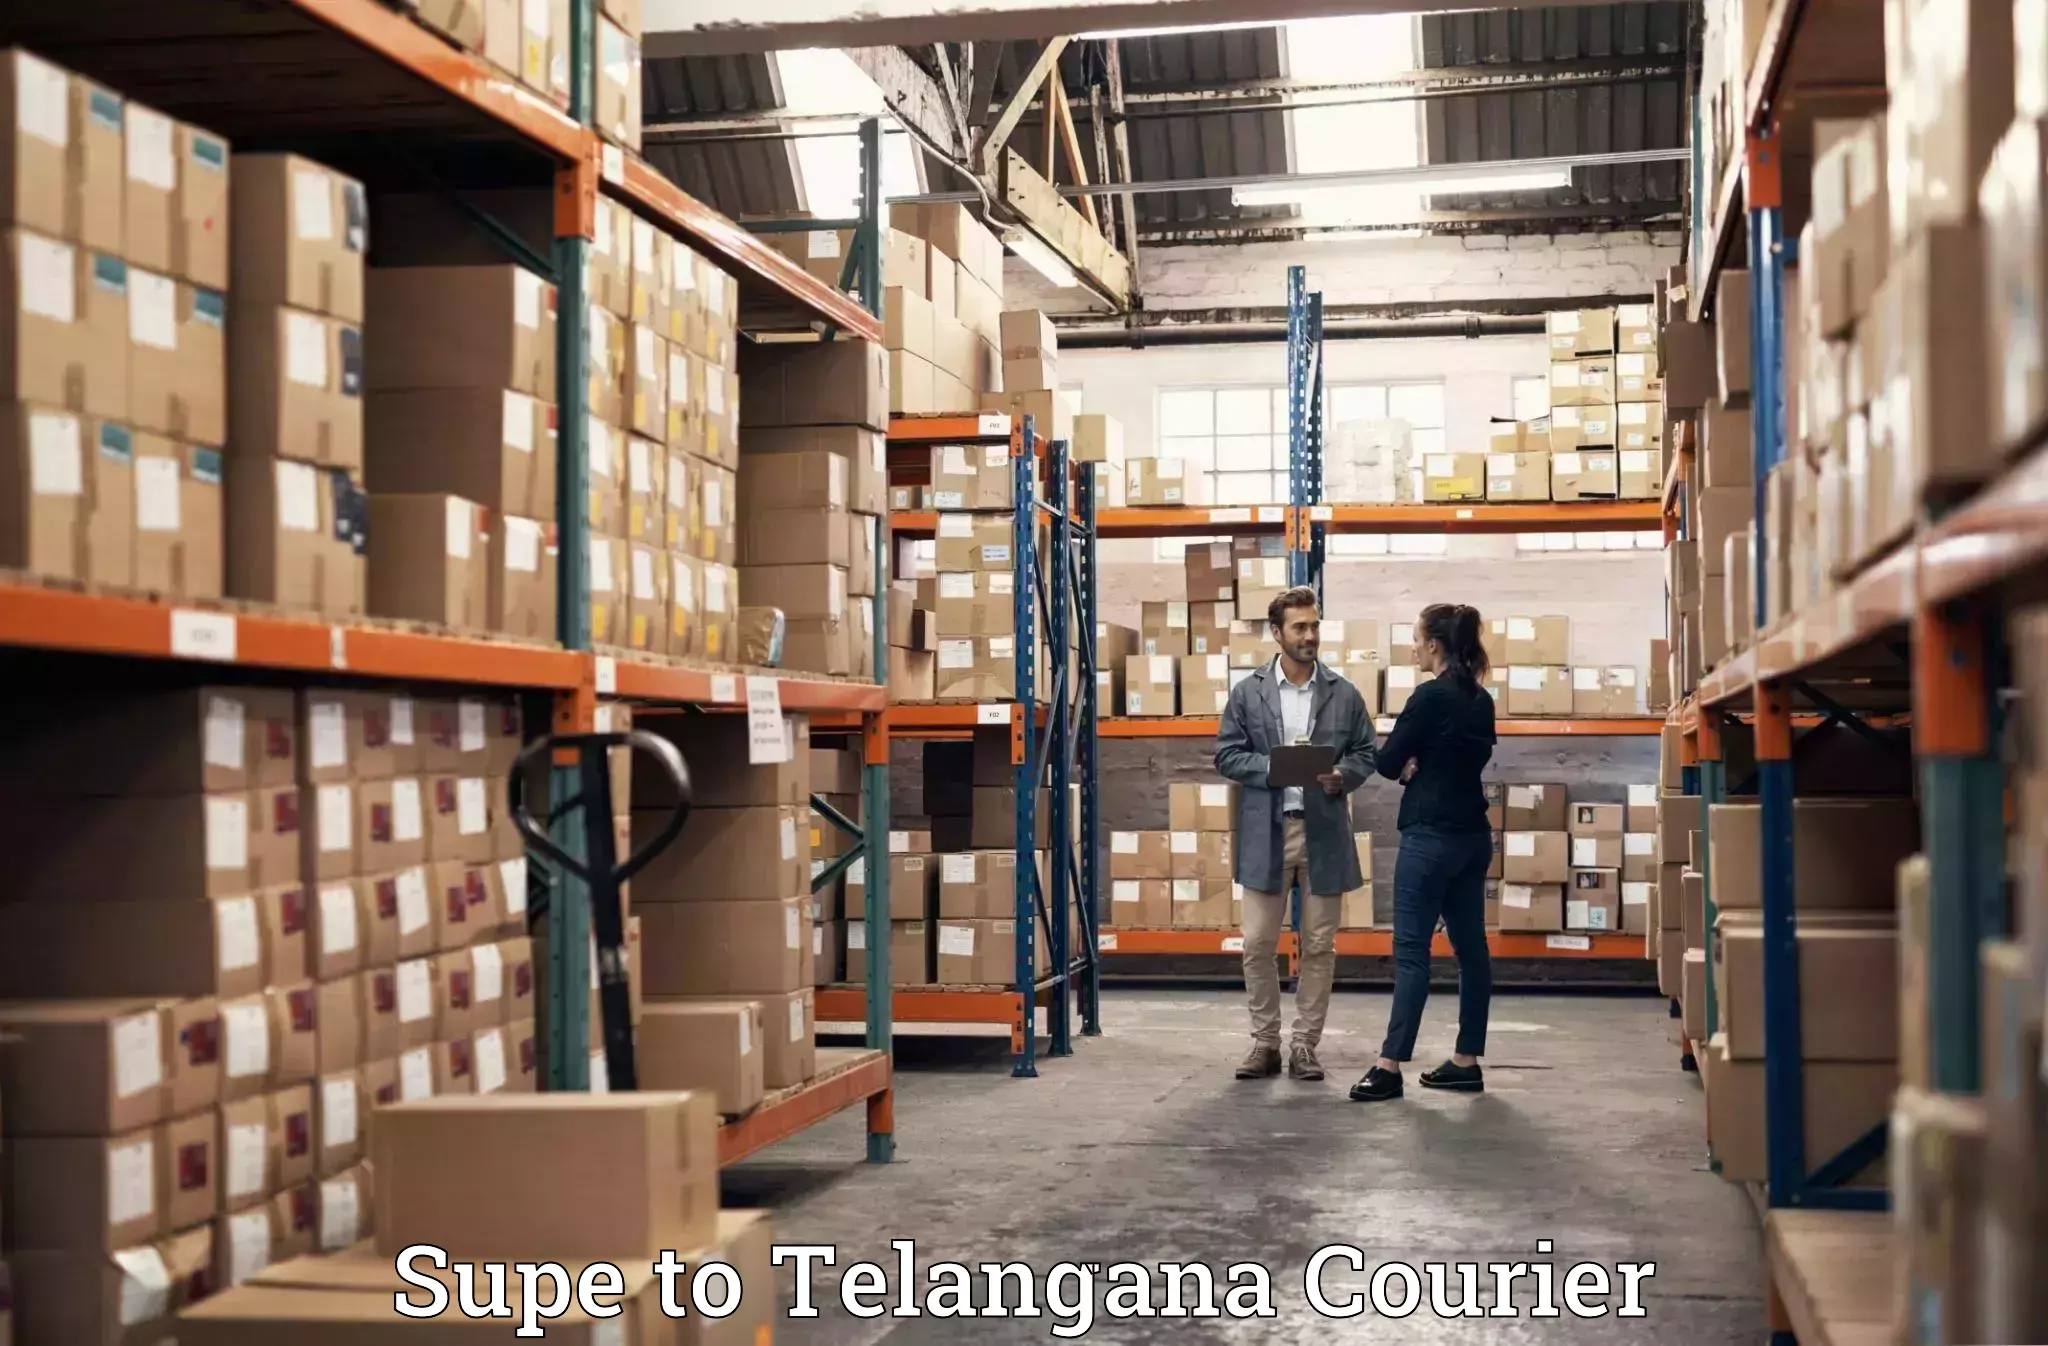 Luggage forwarding service Supe to Telangana